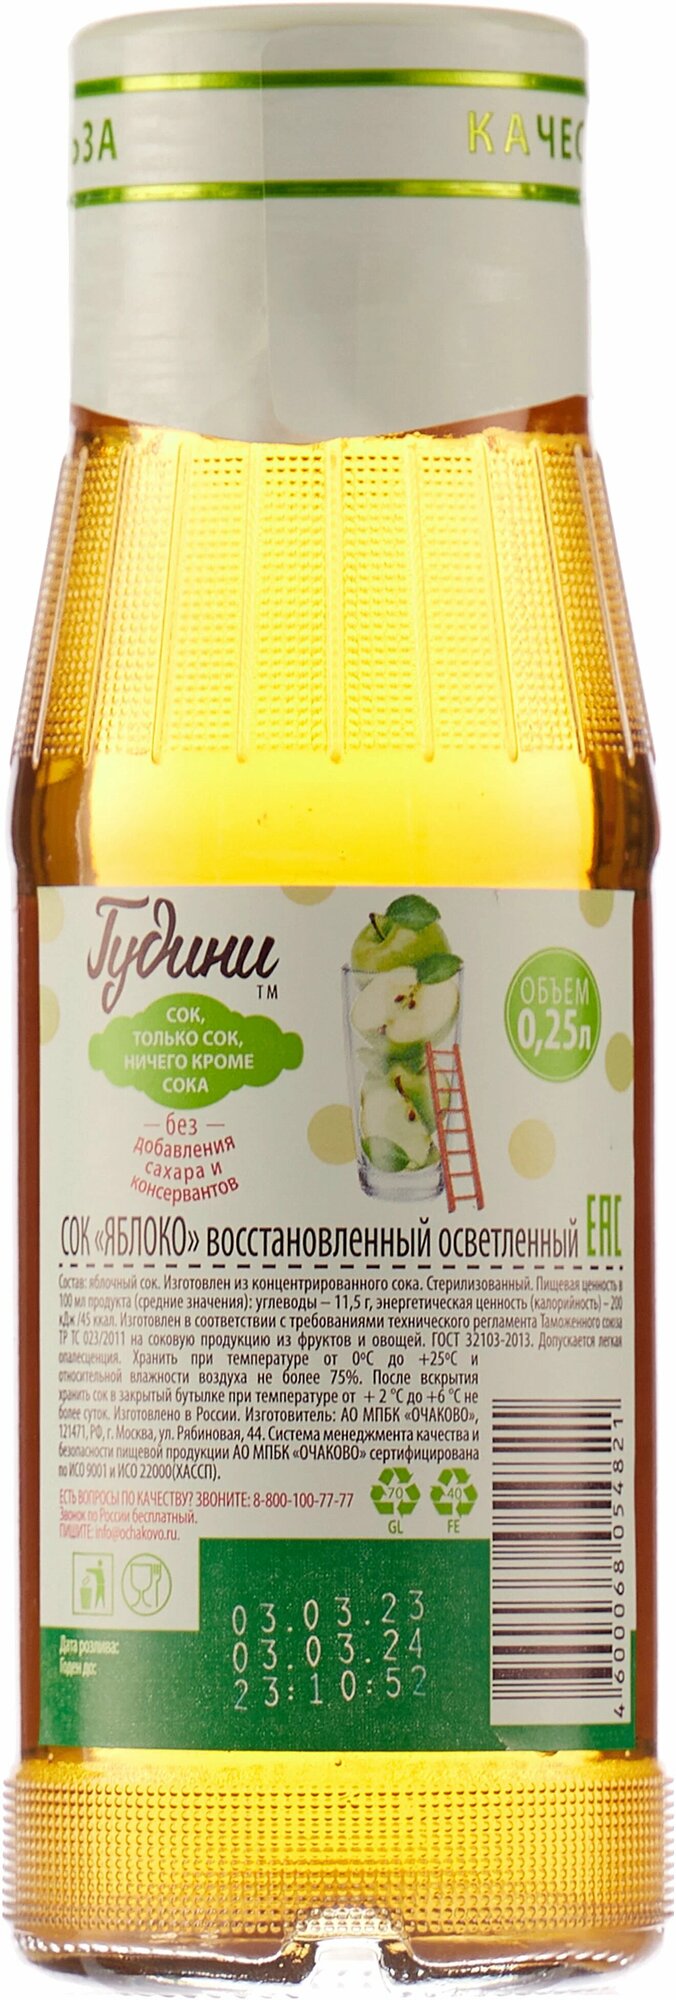 Яблочный осветленный сок Goodini, 8 стеклянных бутылок в упаковке по 0,25 литра